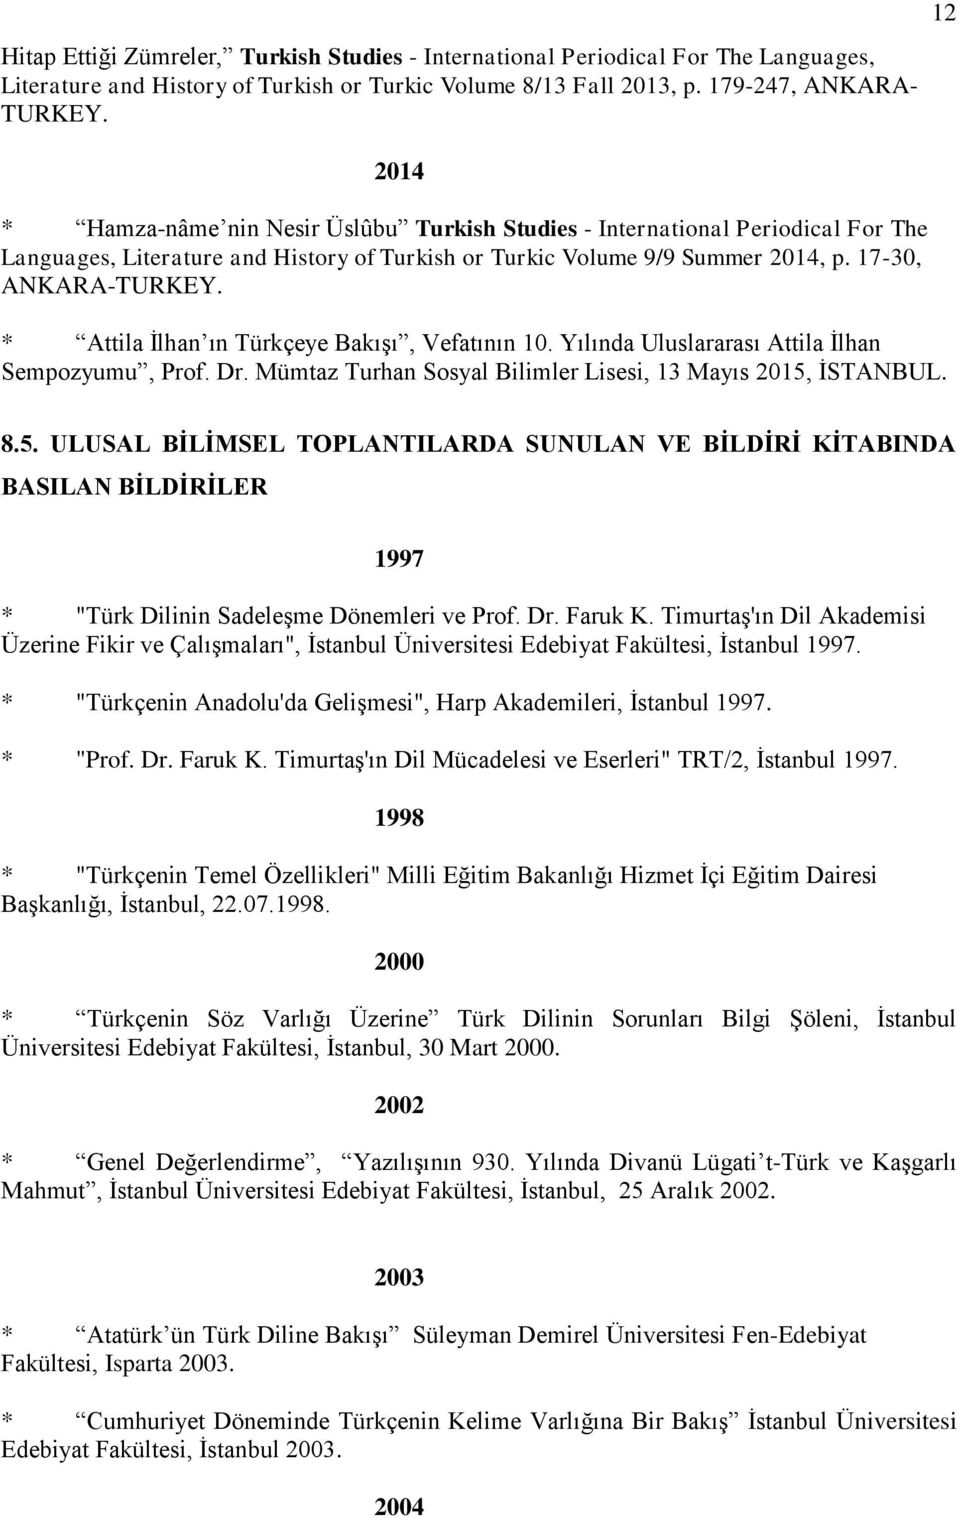 * Attila İlhan ın Türkçeye Bakışı, Vefatının 10. Yılında Uluslararası Attila İlhan Sempozyumu, Prof. Dr. Mümtaz Turhan Sosyal Bilimler Lisesi, 13 Mayıs 2015,